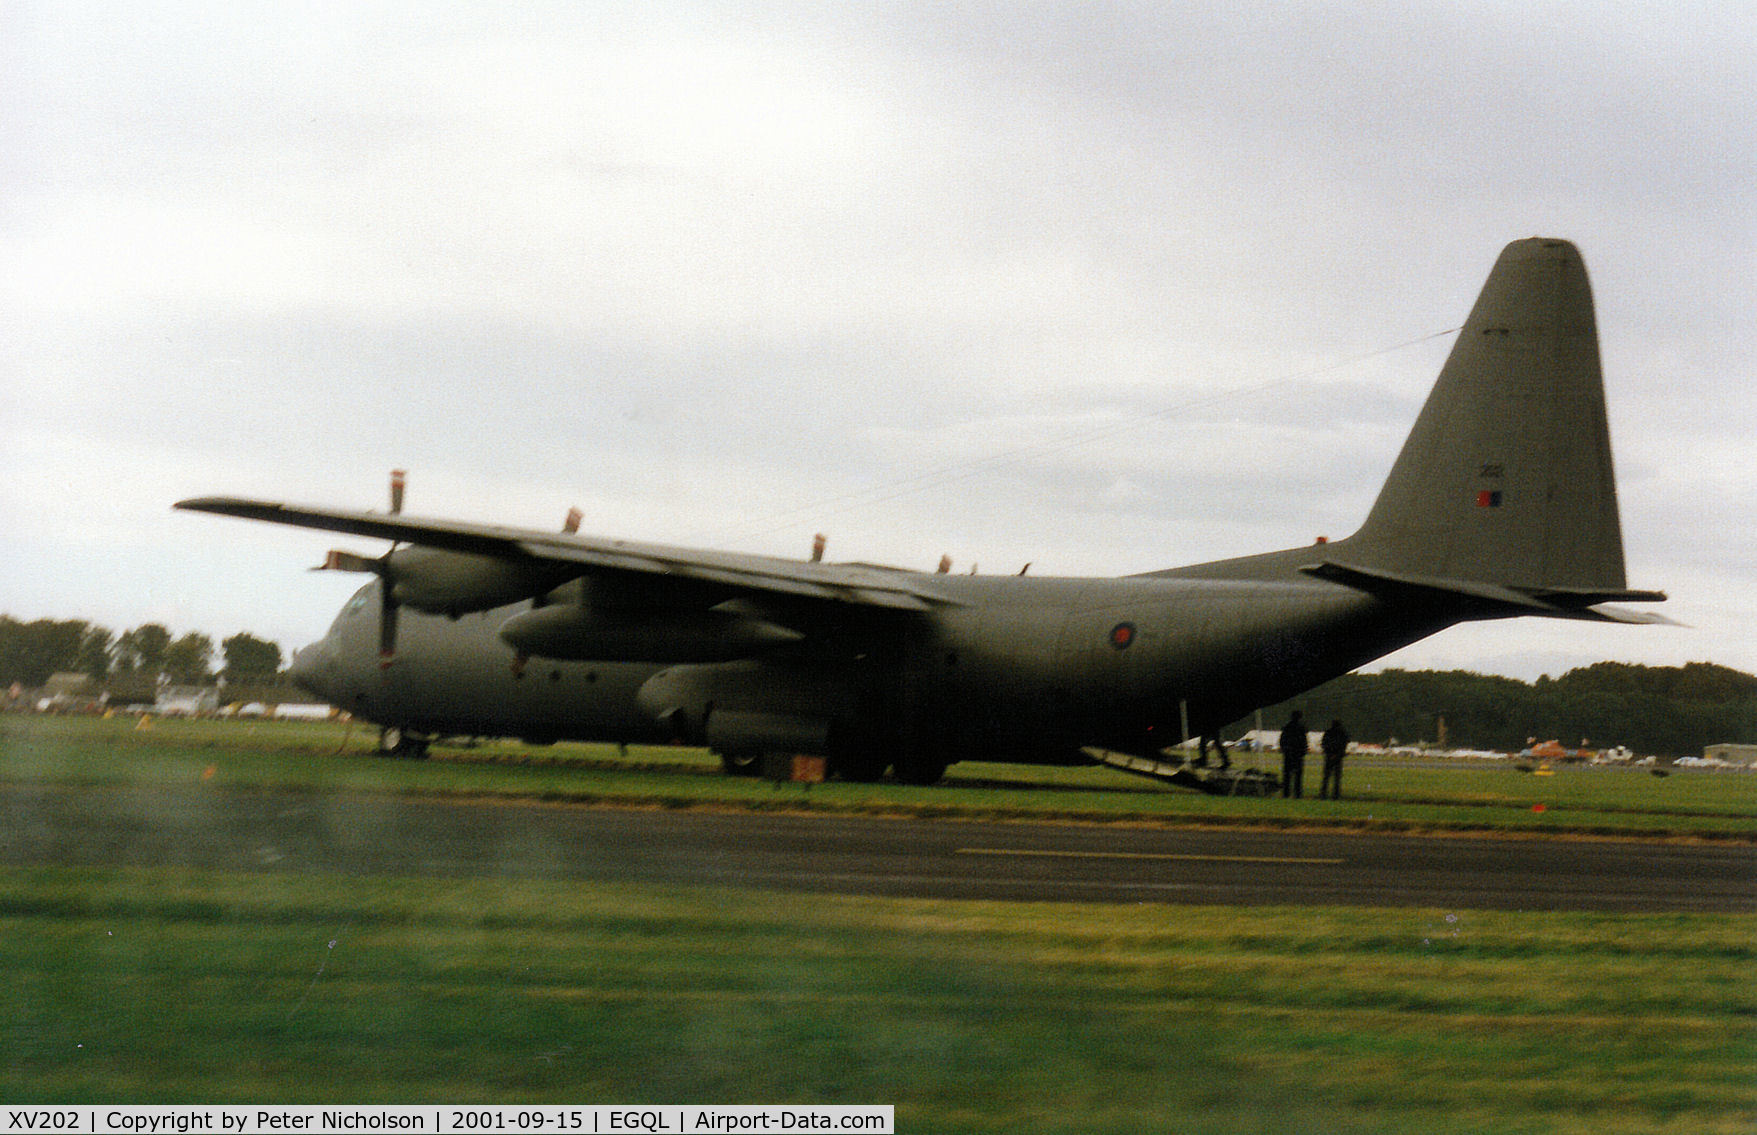 XV202, 1966 Lockheed C-130K Hercules C.3 C/N 382-4226, Hercules C.3, callsign Ascot 5400, of the Lyneham Transport Wing on display at the 2001 RAF Leuchars Airshow.